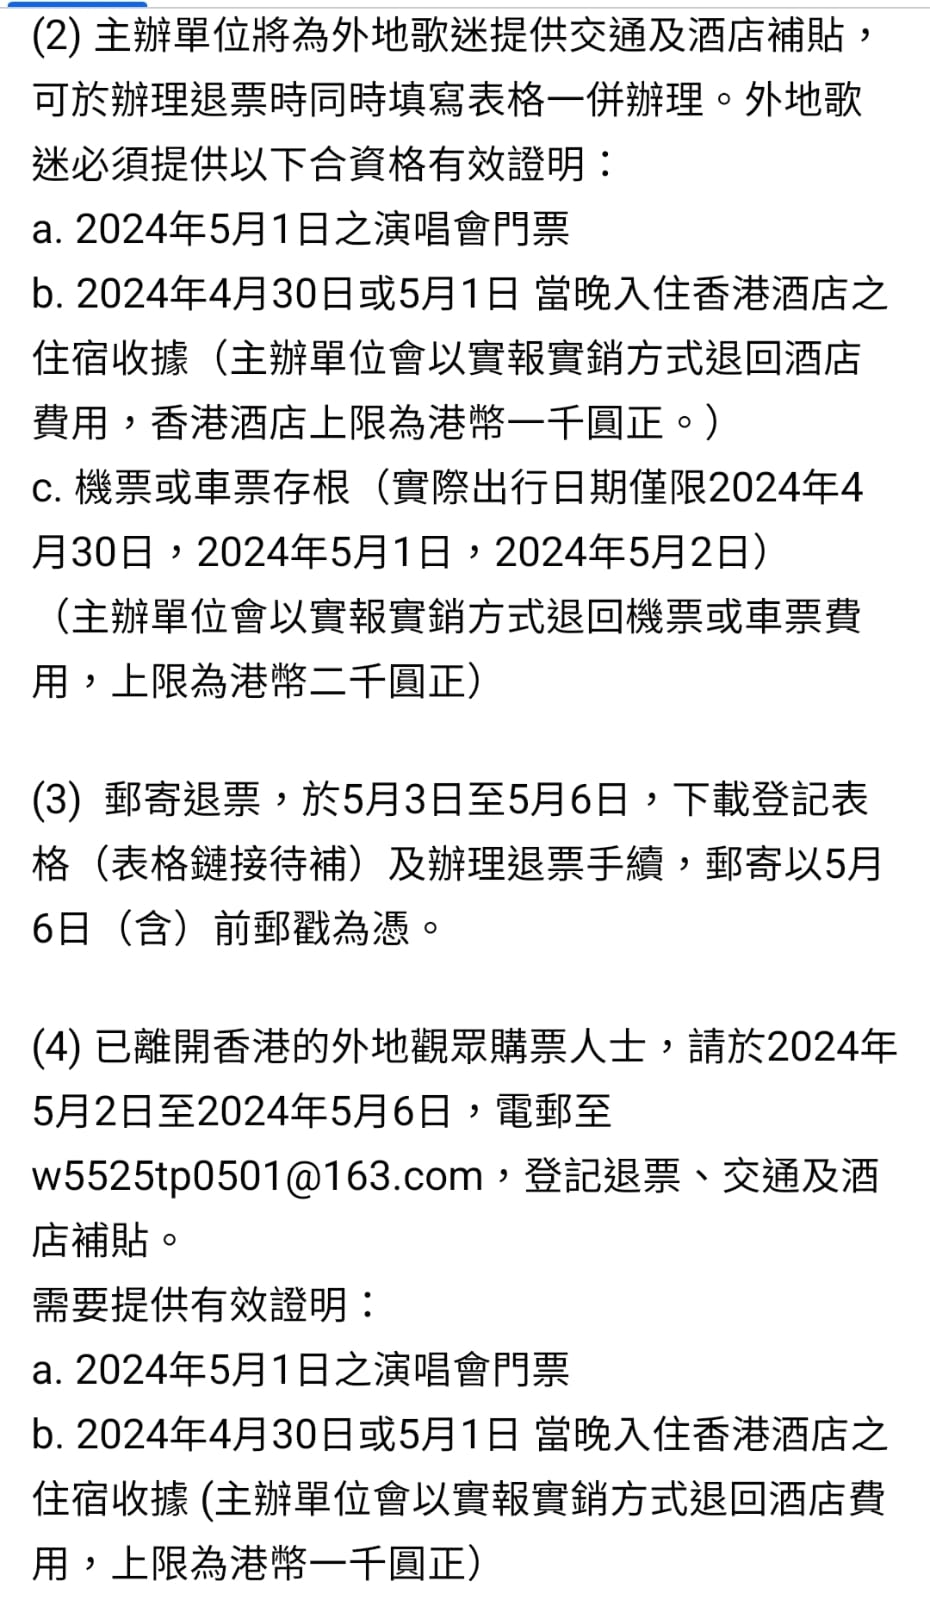 五月天演唱會香港站主辦特高娛樂今日公布補場及退票安排。（二）